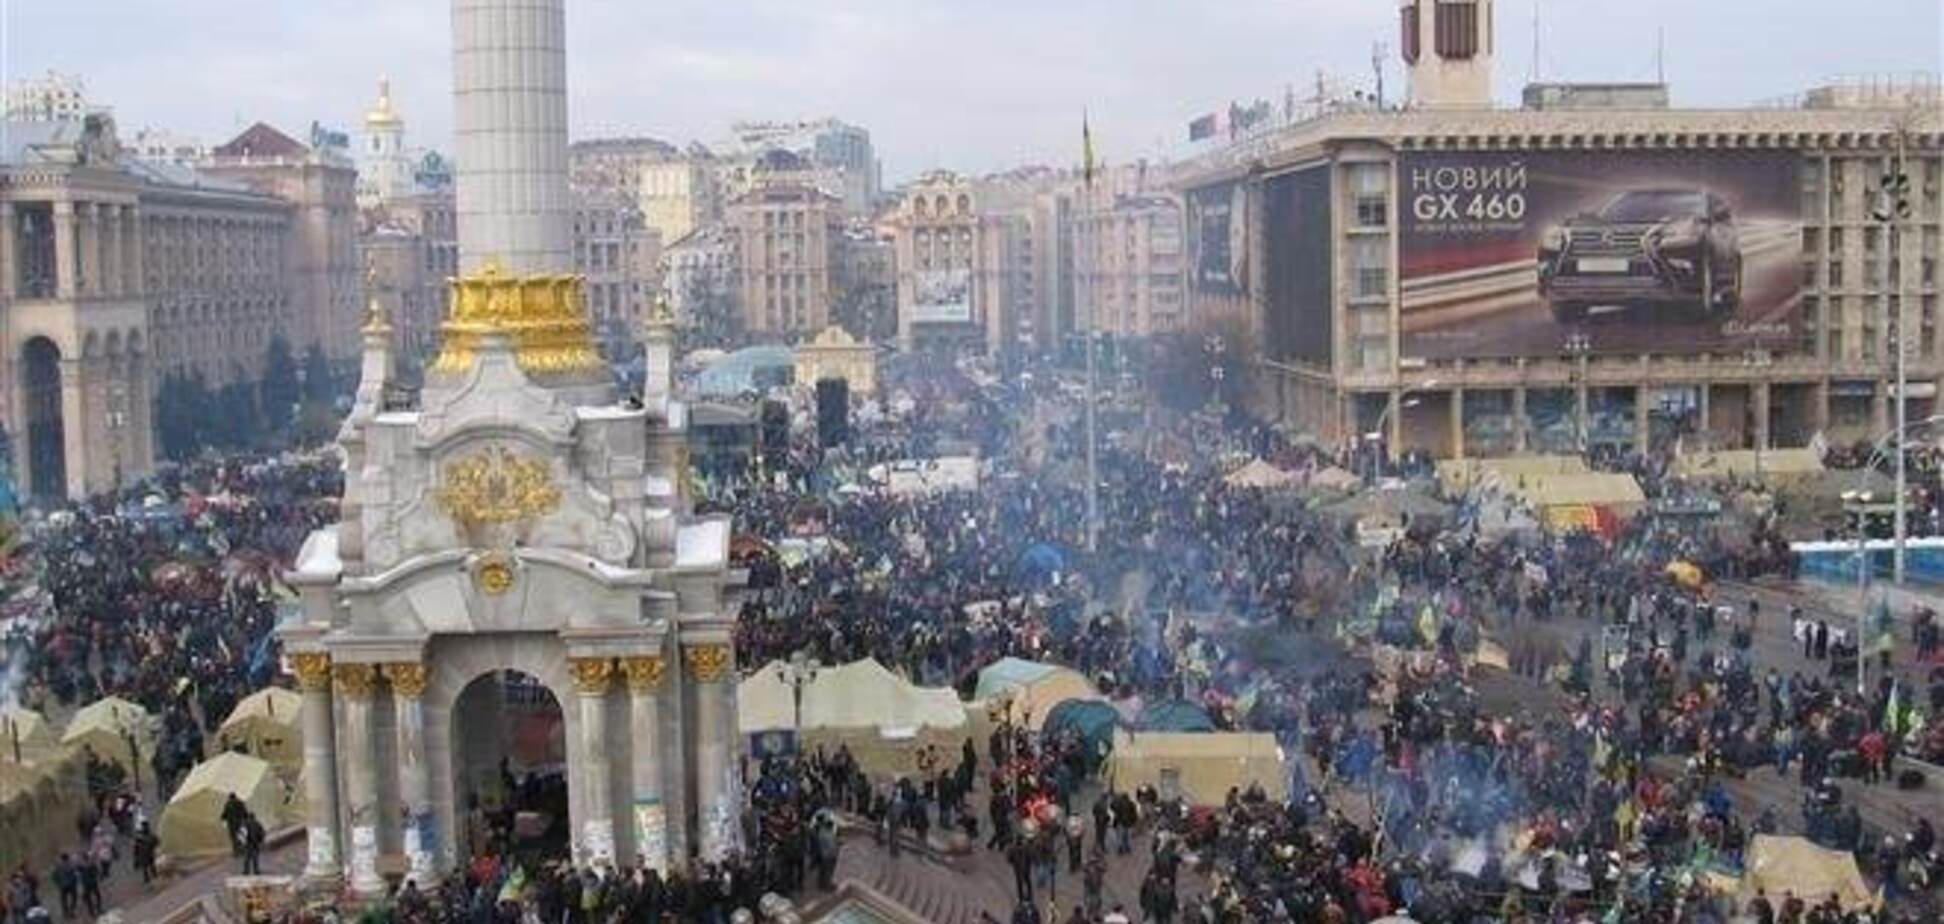 Украинские политики хотят зарегистрировать 'Майдан', как торговую марку